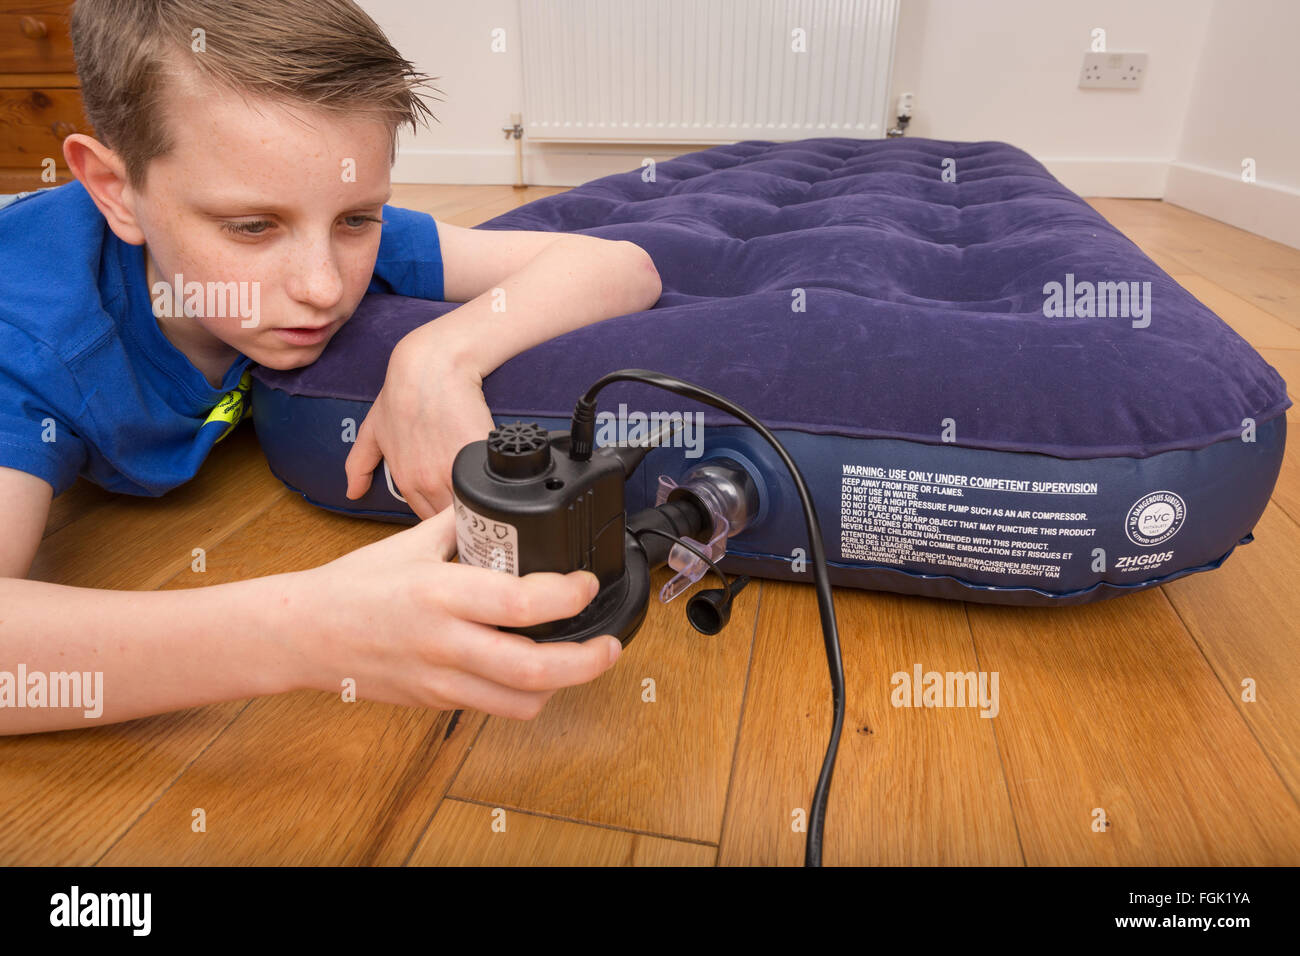 Un lit d'air d'être gonflés avec une pompe électrique Banque D'Images